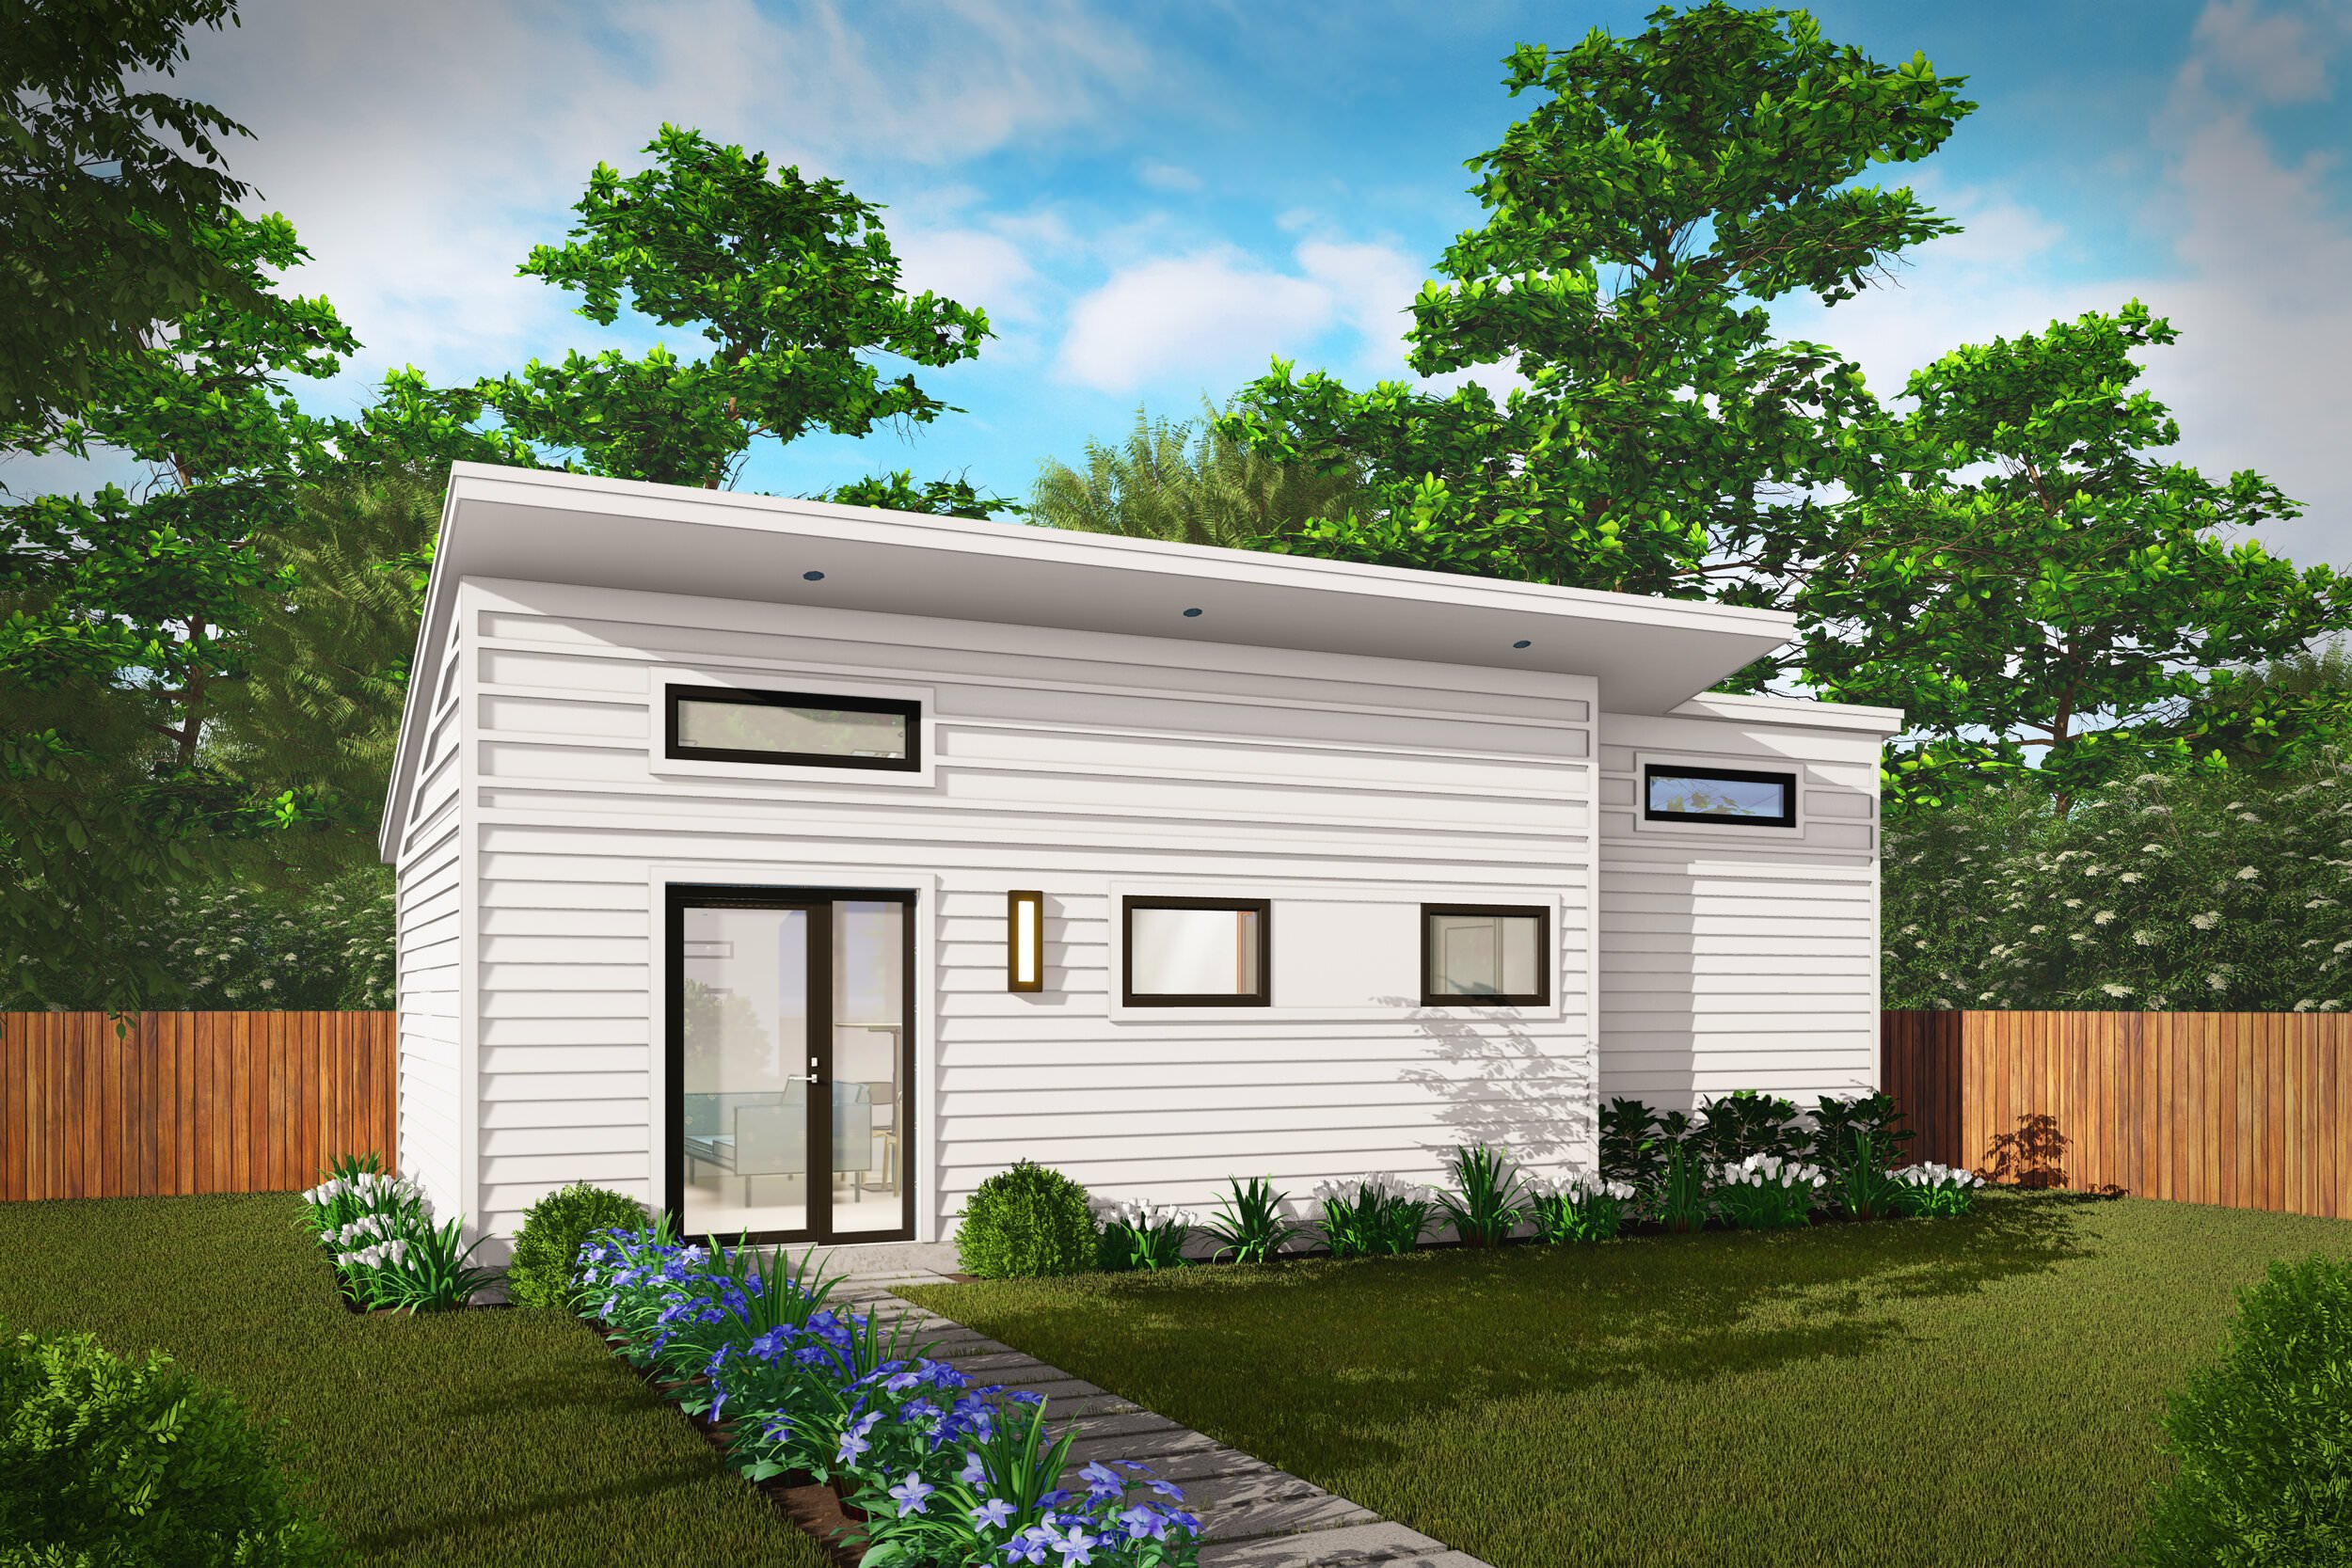 Skyline Model-Backyard Cottages-Detached-ADU-Arlington-Virginia-Missing Middle-Investment-Housing (14).jpg